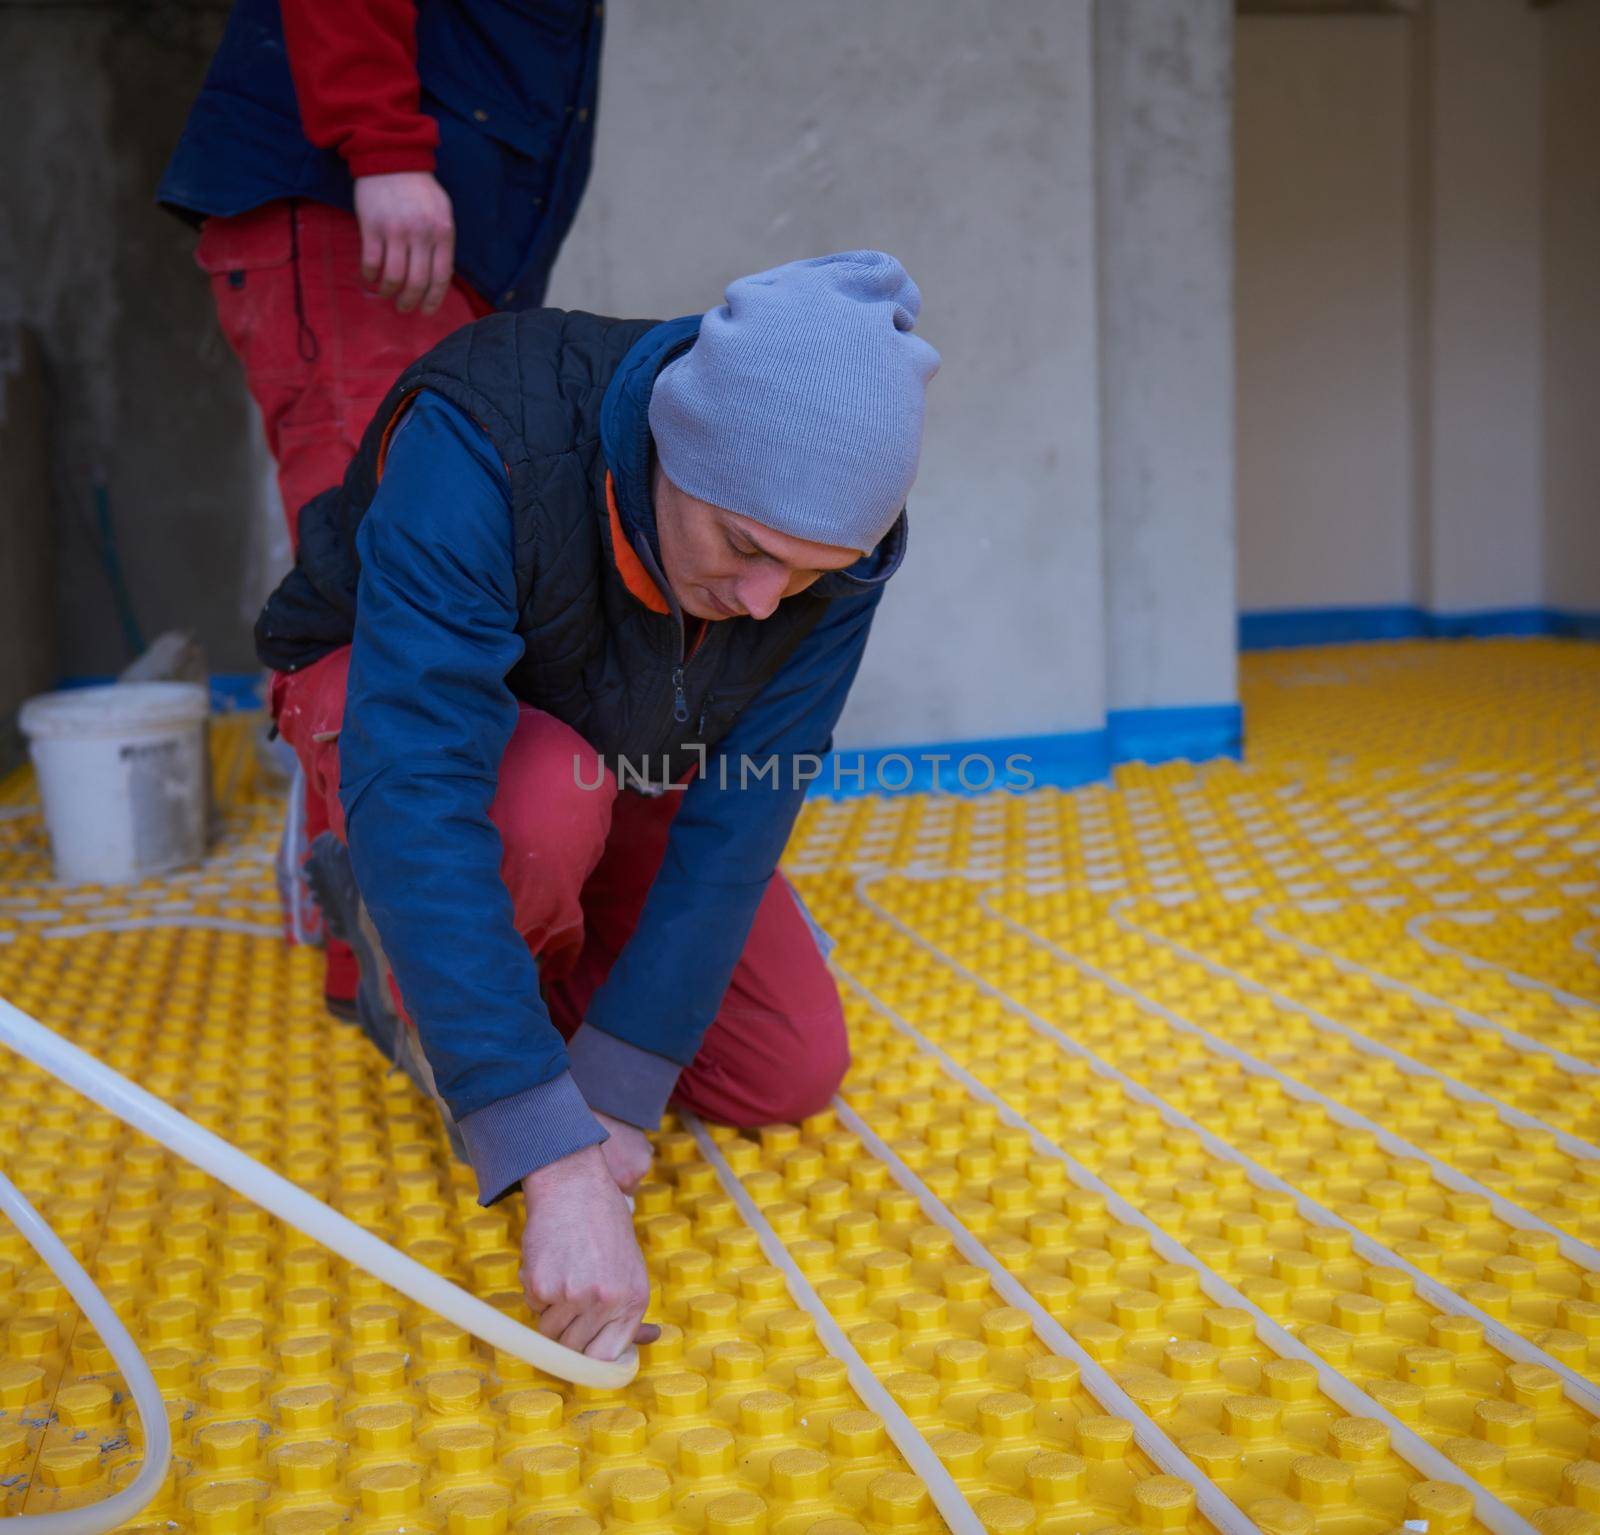 workers installing underfloor heating system by dotshock